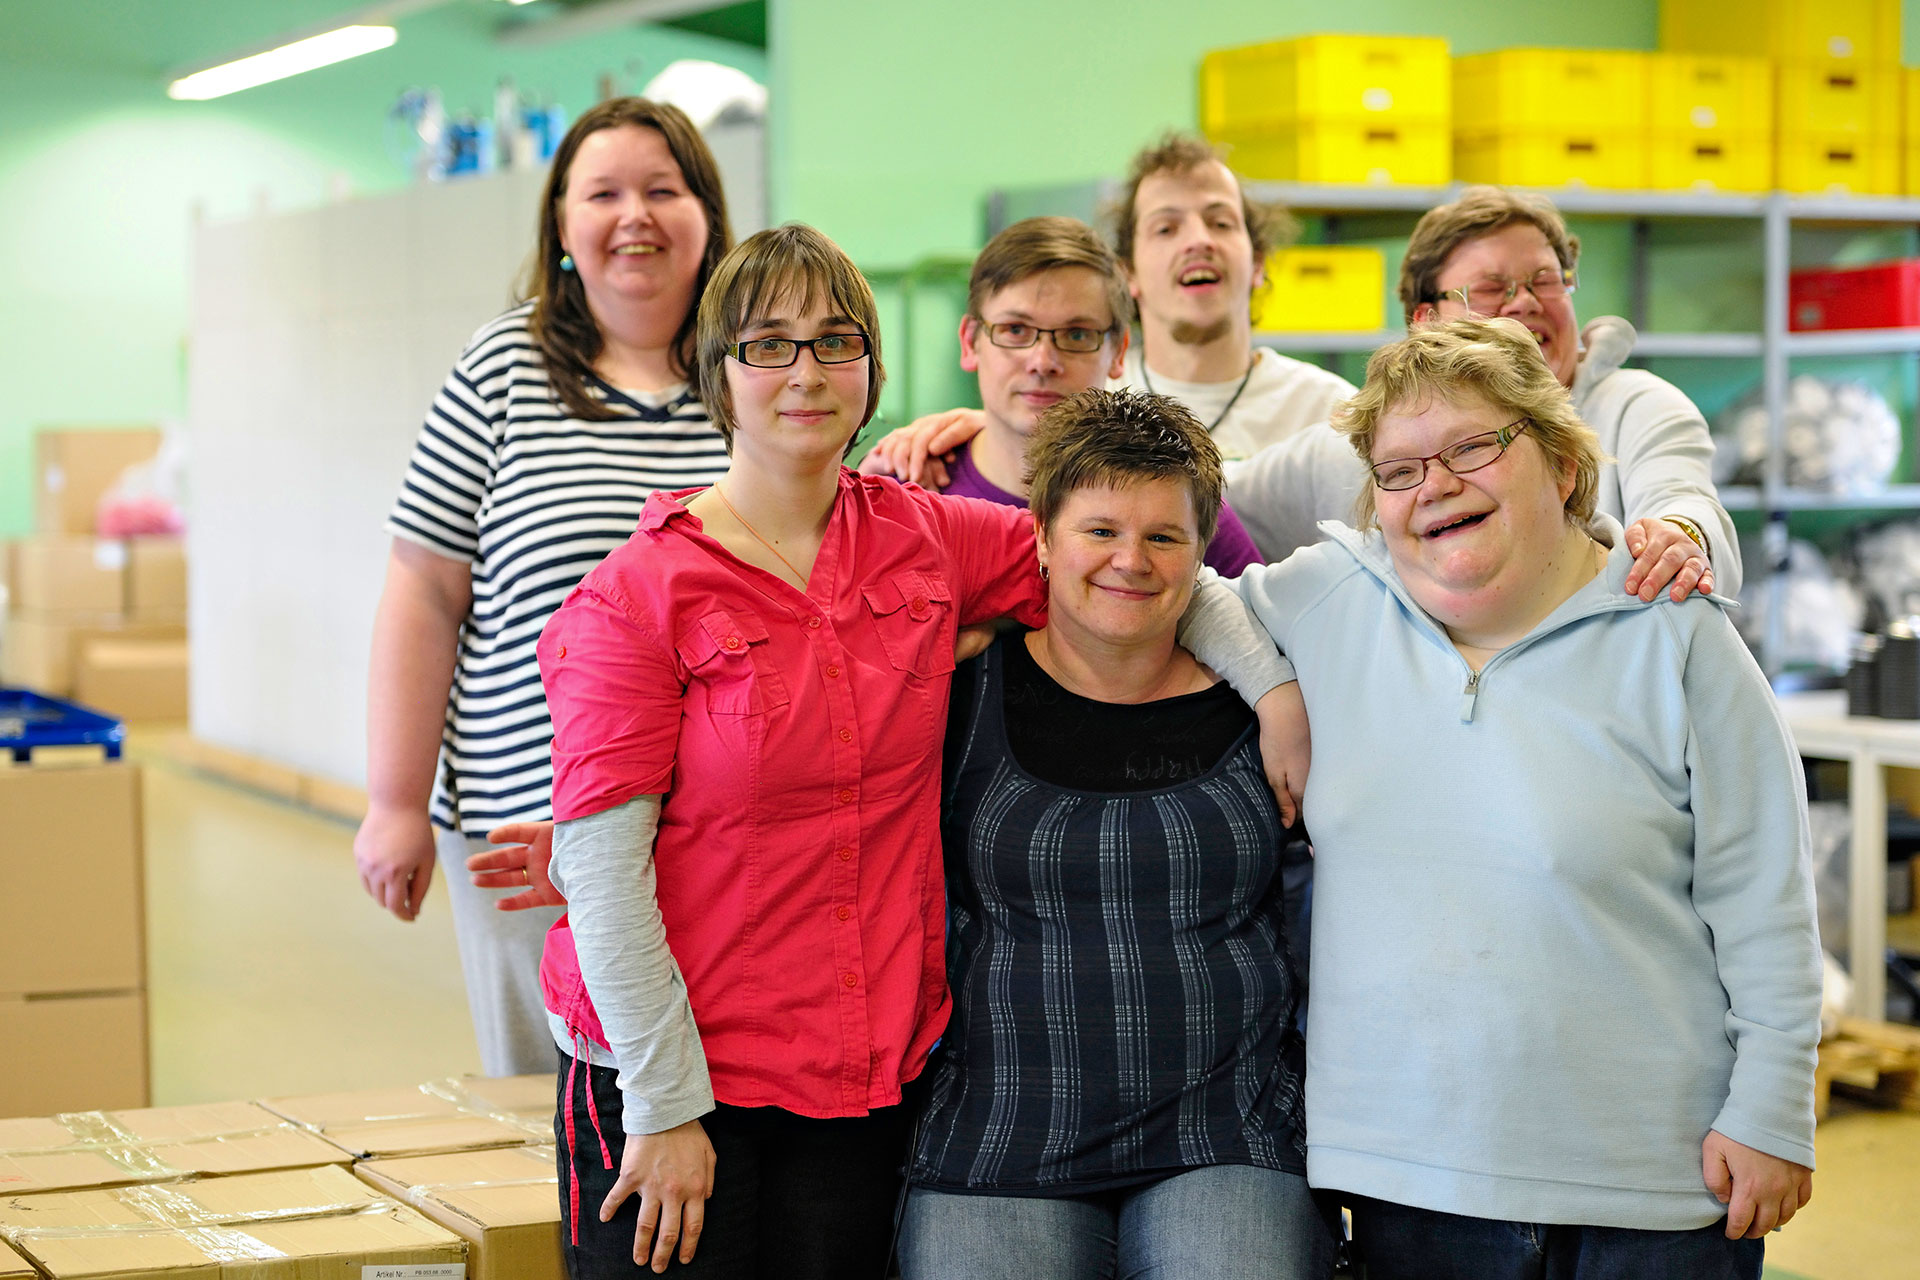 Im Bild zu sehen sind Teilnehmer aus dem Projekt „Jena inklusiv”. Sie halten sich in den Armen und lachen.